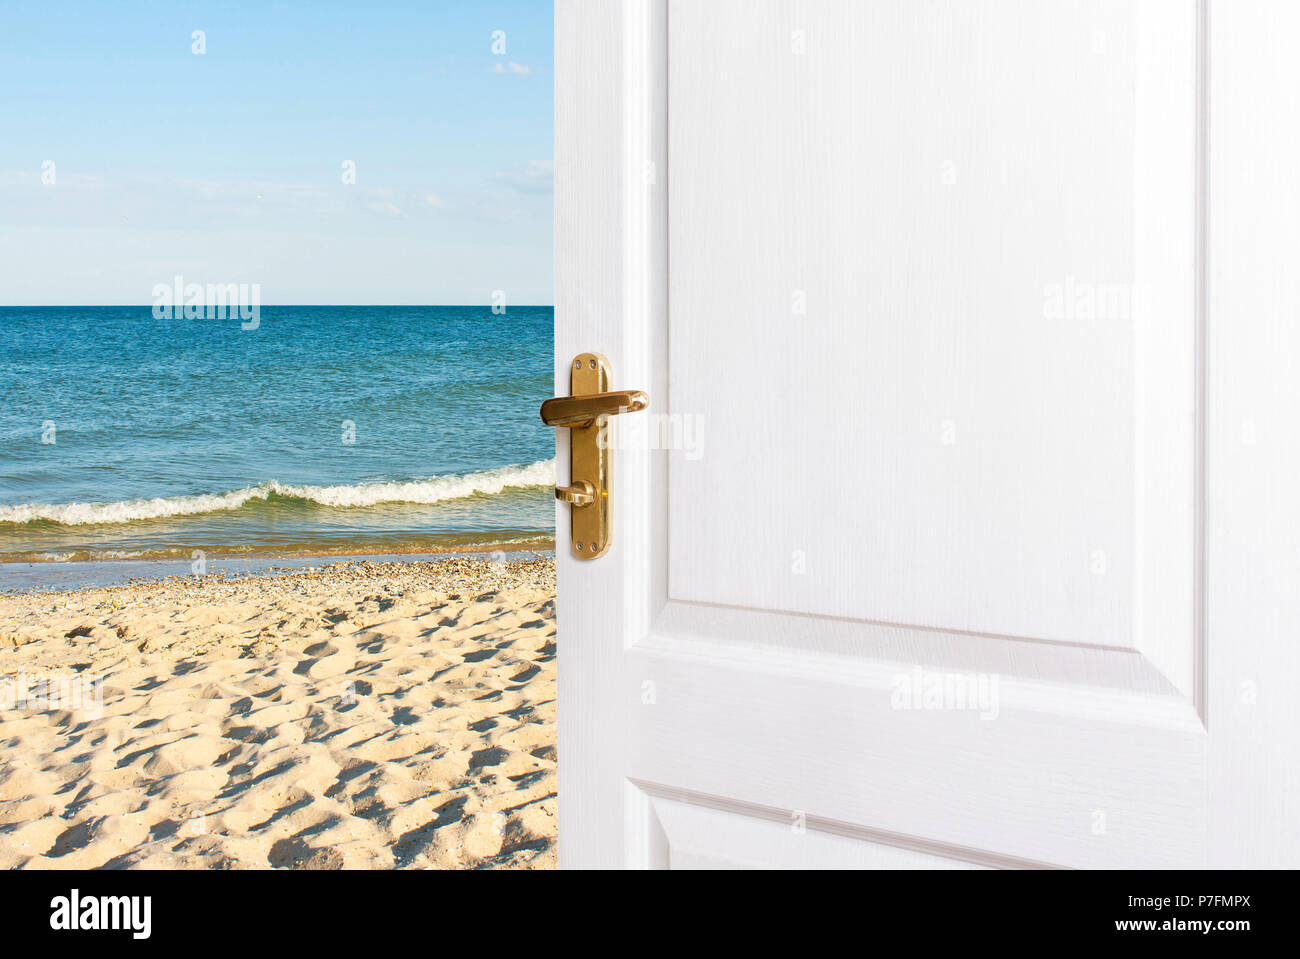 Weiße Türen öffnen zum Strand. Eingang, Ausgang zum Zimmer, Haus am Meer. Das Konzept der Entspannung, Ferien, ein neues Leben Stockfoto